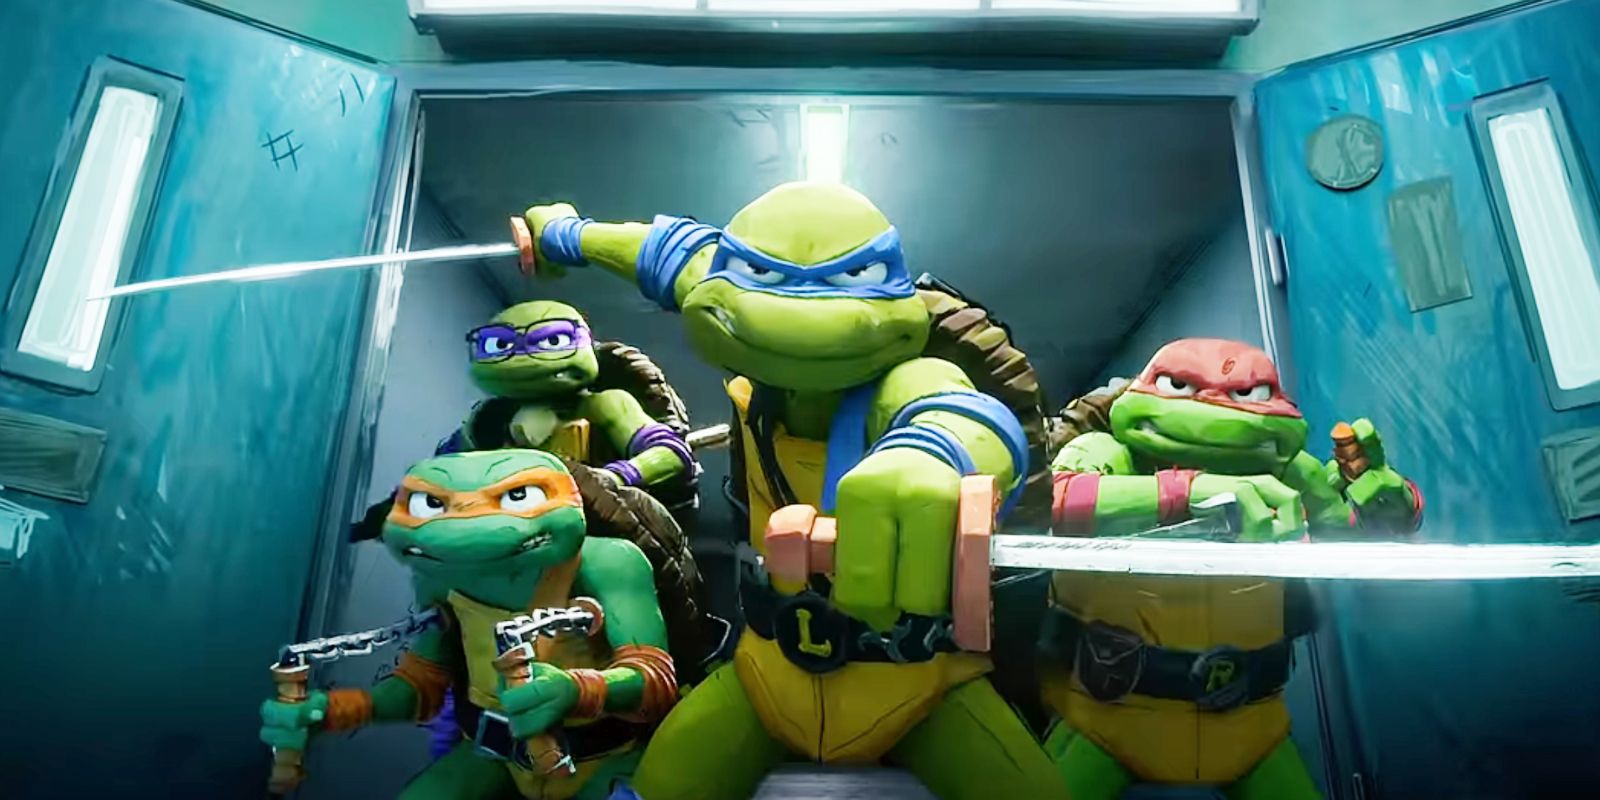 Tales Of The Teenage Mutant Ninja Turtles Cast, Trailer & Everything